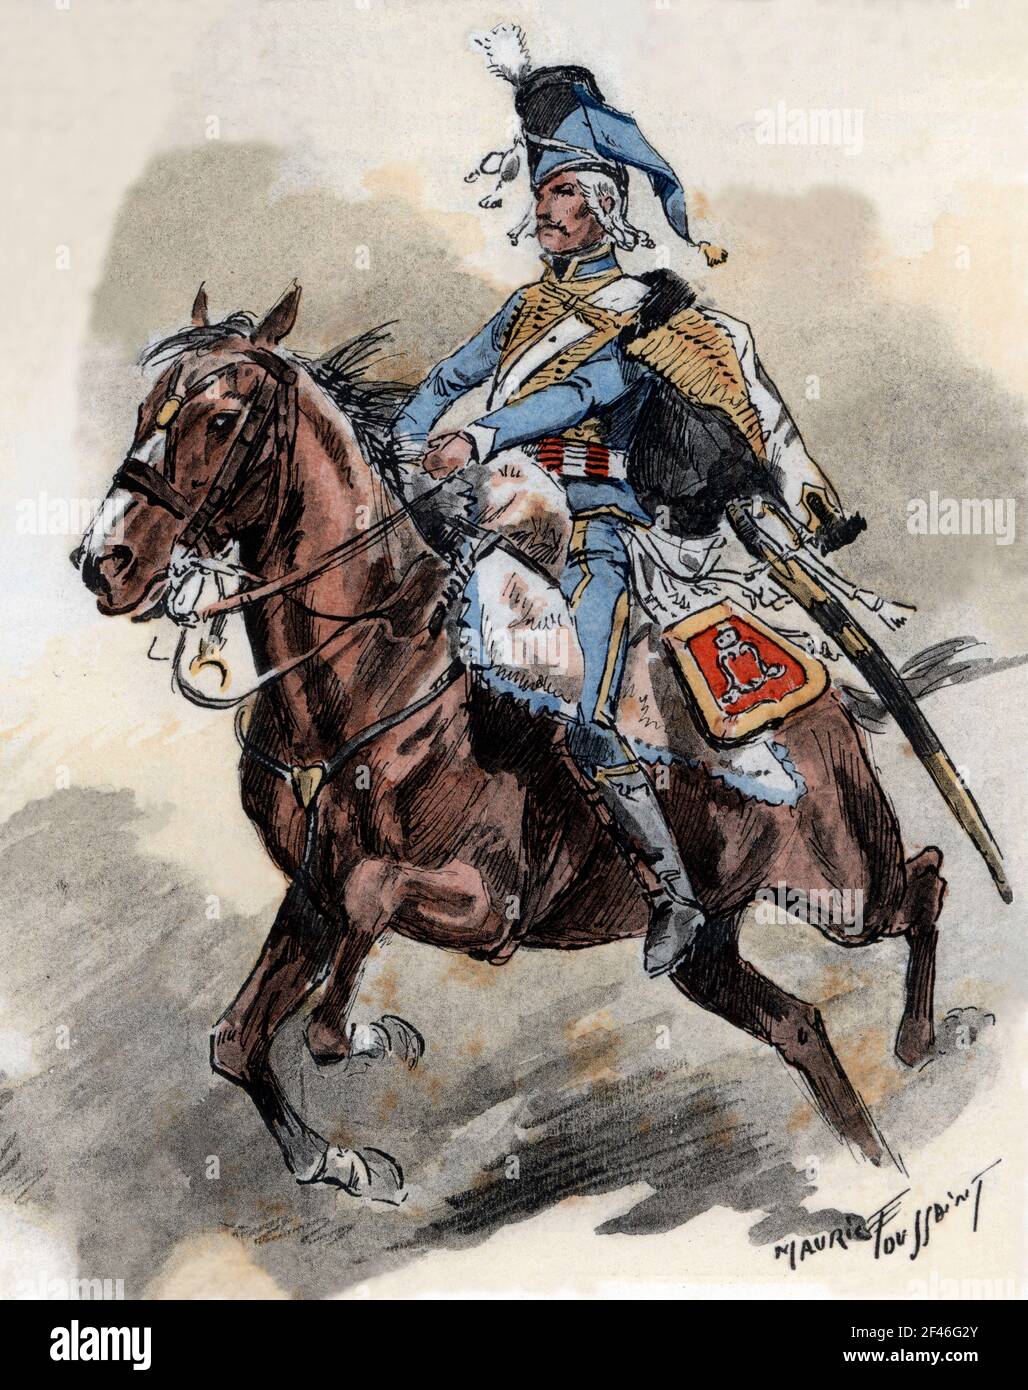 Francia. Uniformes de regimiento franceses. Húsar de Lauzun en 1786. Grabado de 1945. Author: MAURICE TOUSSAINT. Stock Photo